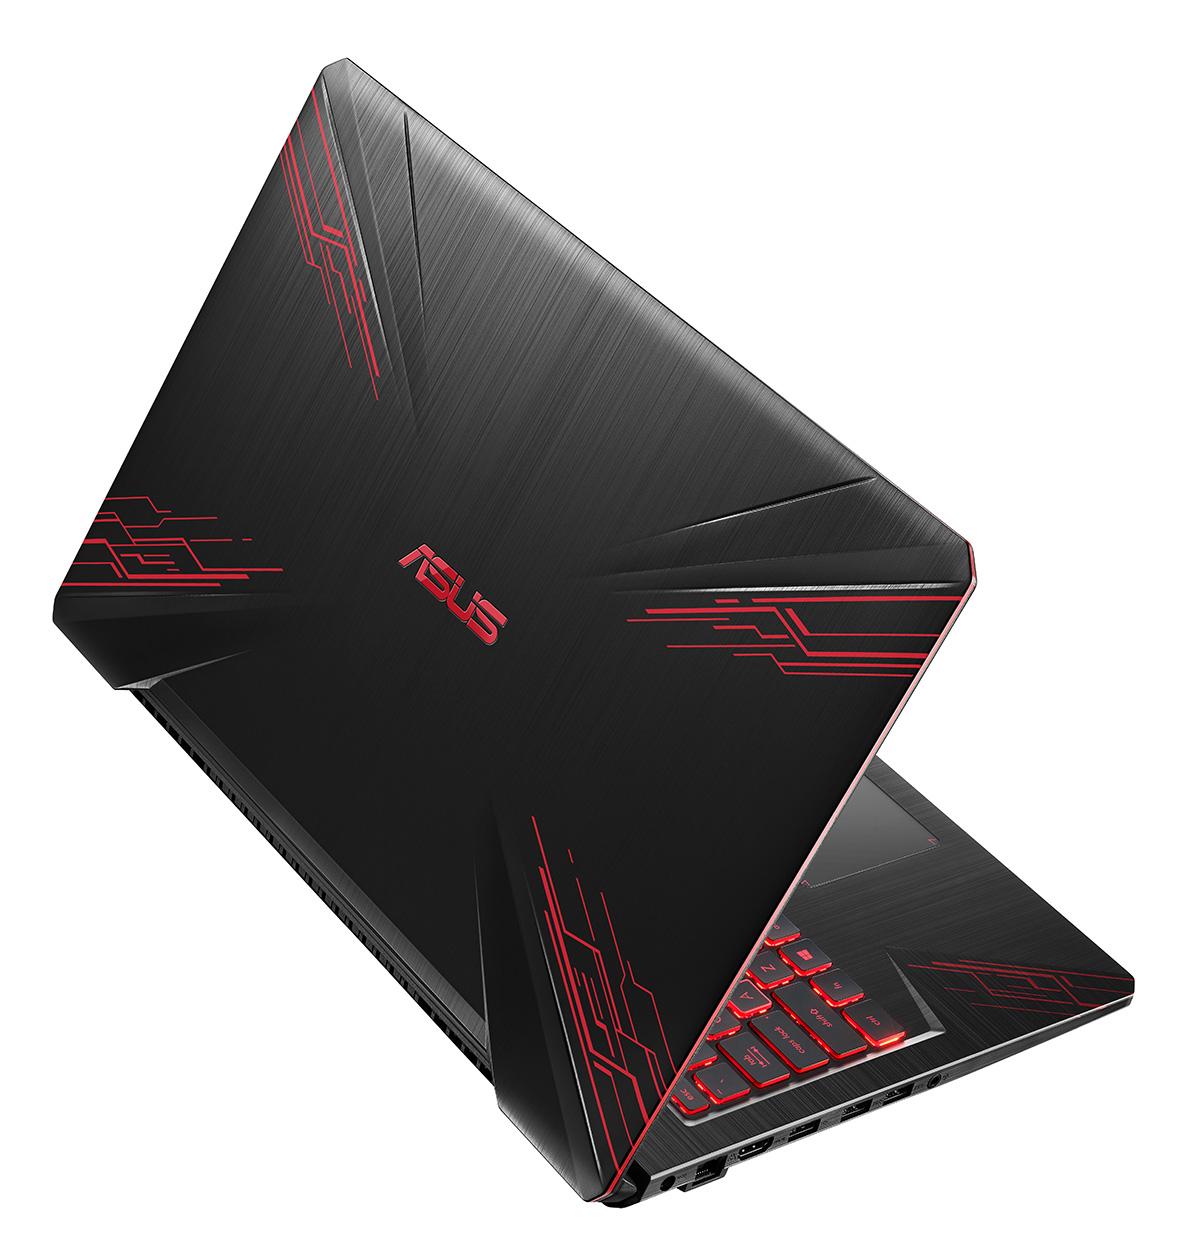 Портфолио игровых ноутбуков Asus расширяется с FX504 серии TUF Gaming